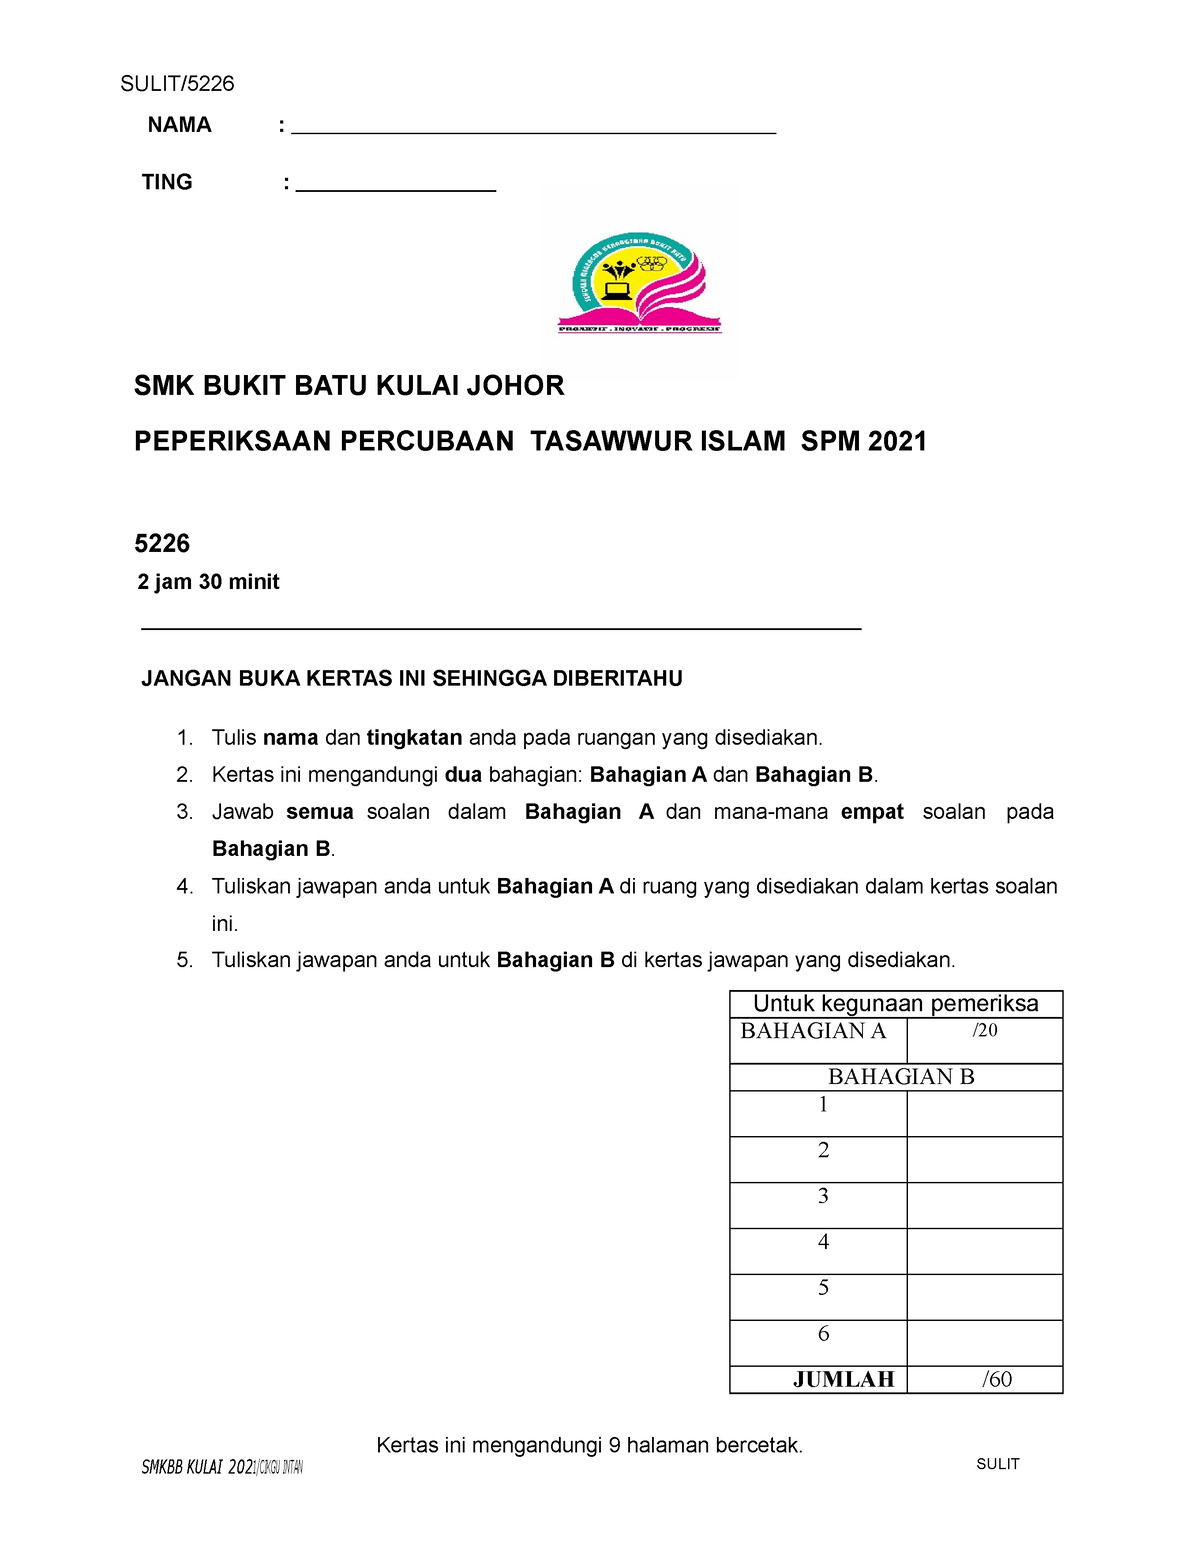 Soalan Percubaan Tasawwur Islam 2021 SPM Johor 2  NAMA  TING  SMK